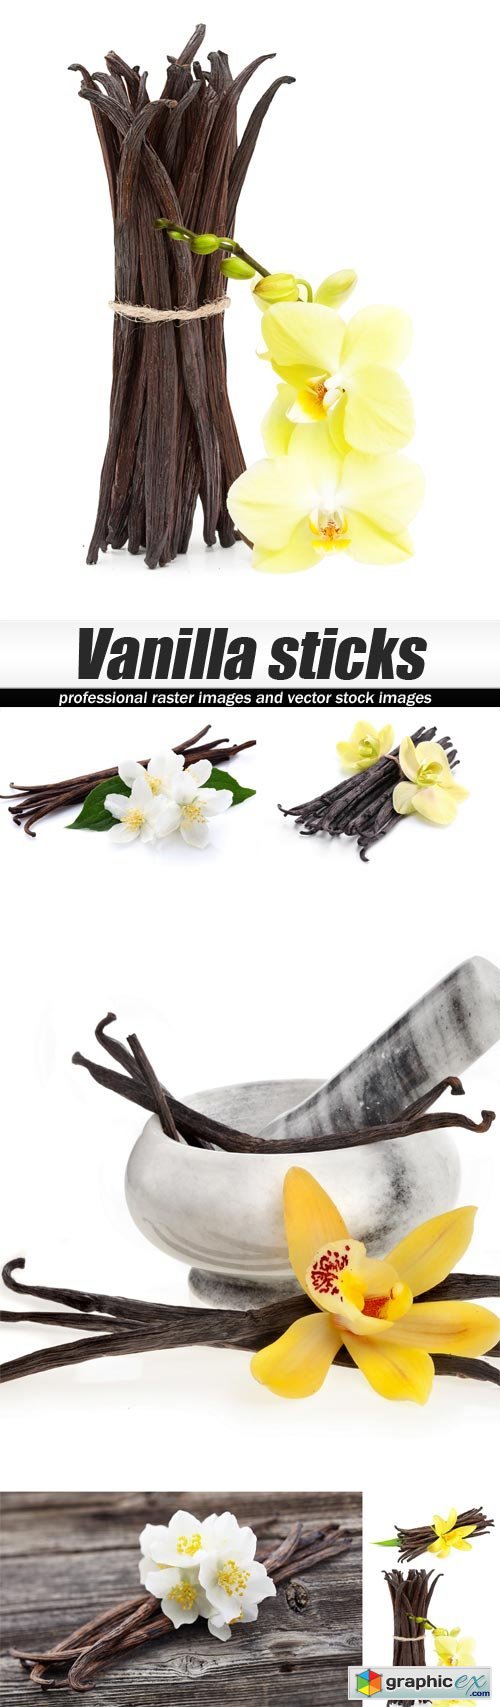 Vanilla sticks